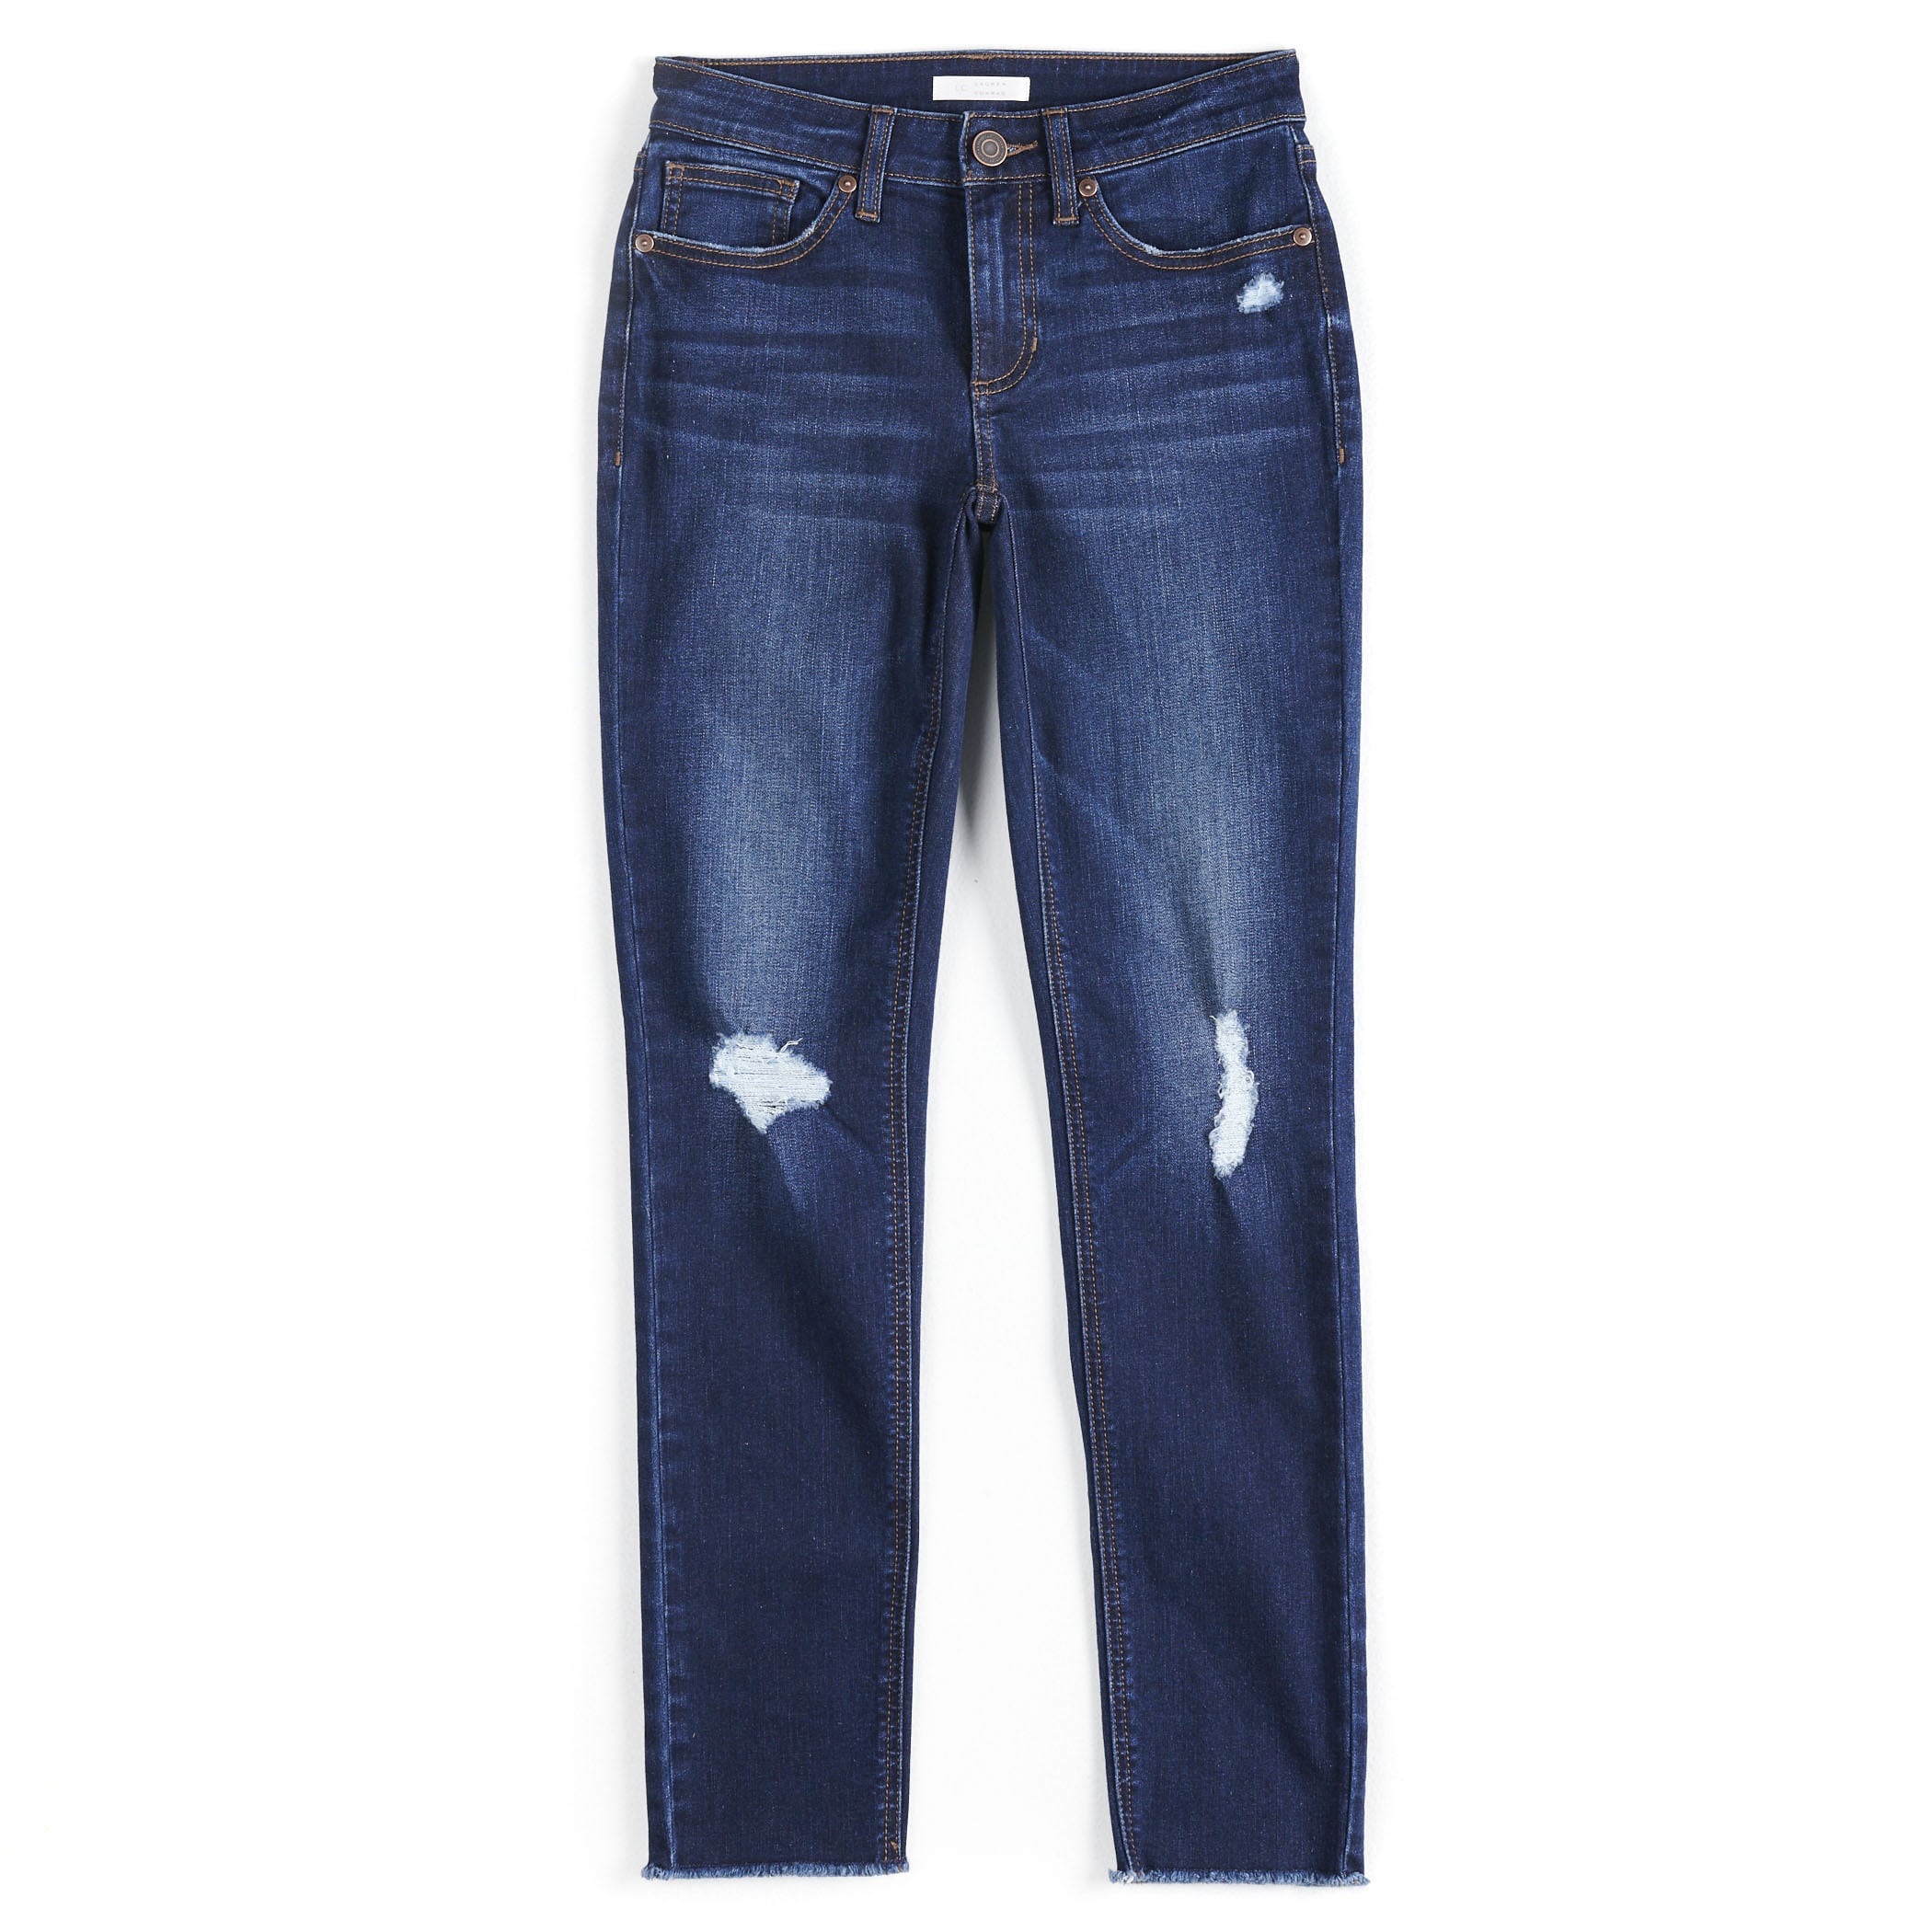 Lauren Conrad Size 10 Denim Jeans – Best Friends Consignment